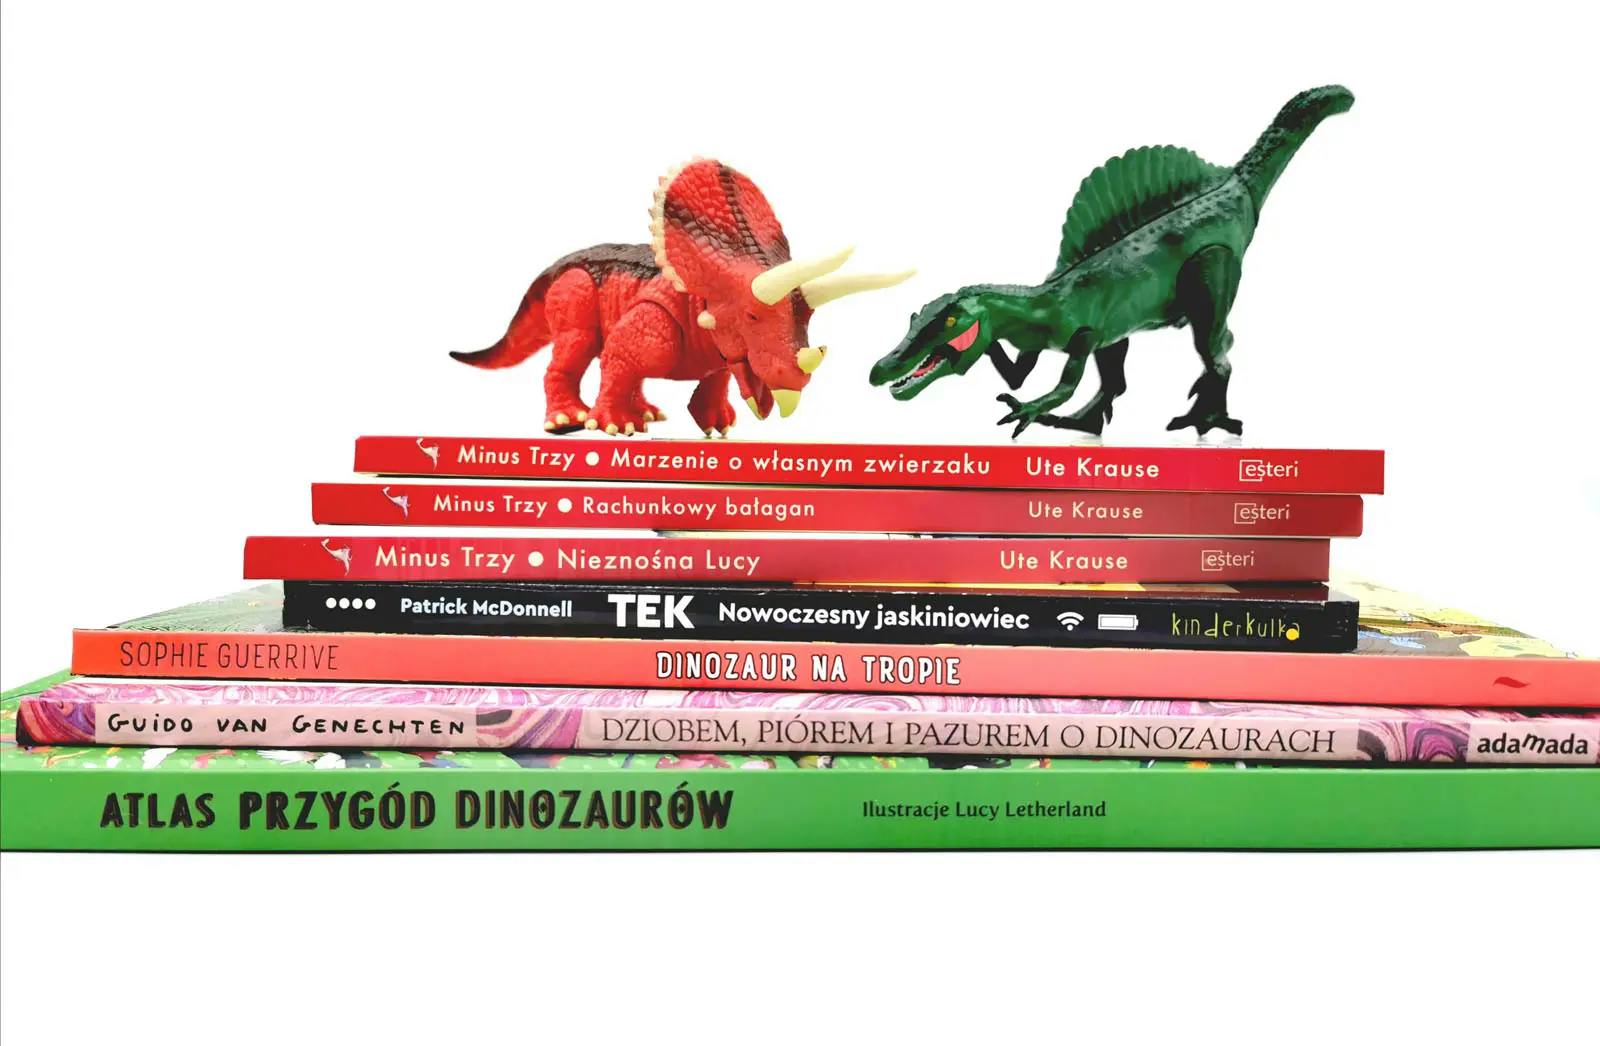 Książki z PnŚ 26 tutego 2020 - książki o dinozaurach. Z przymrużeniem oka ;)